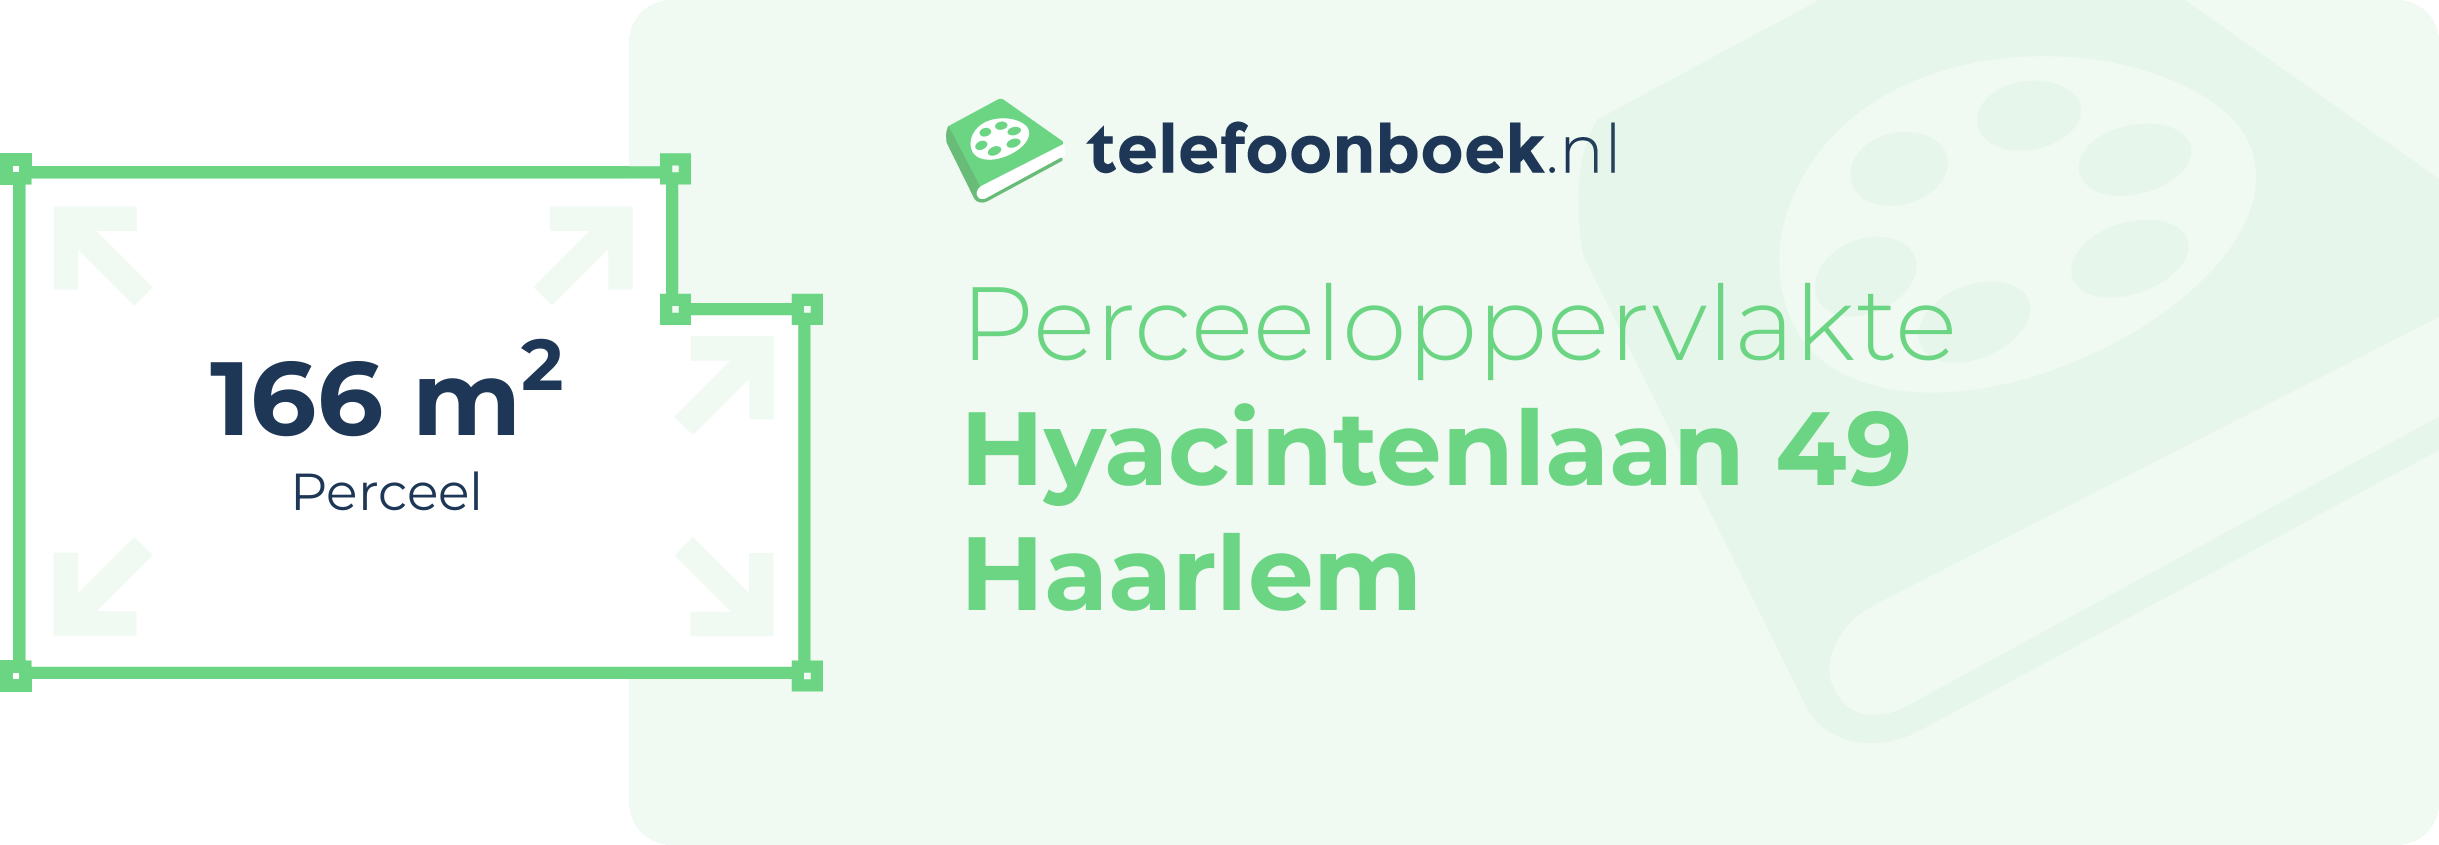 Perceeloppervlakte Hyacintenlaan 49 Haarlem